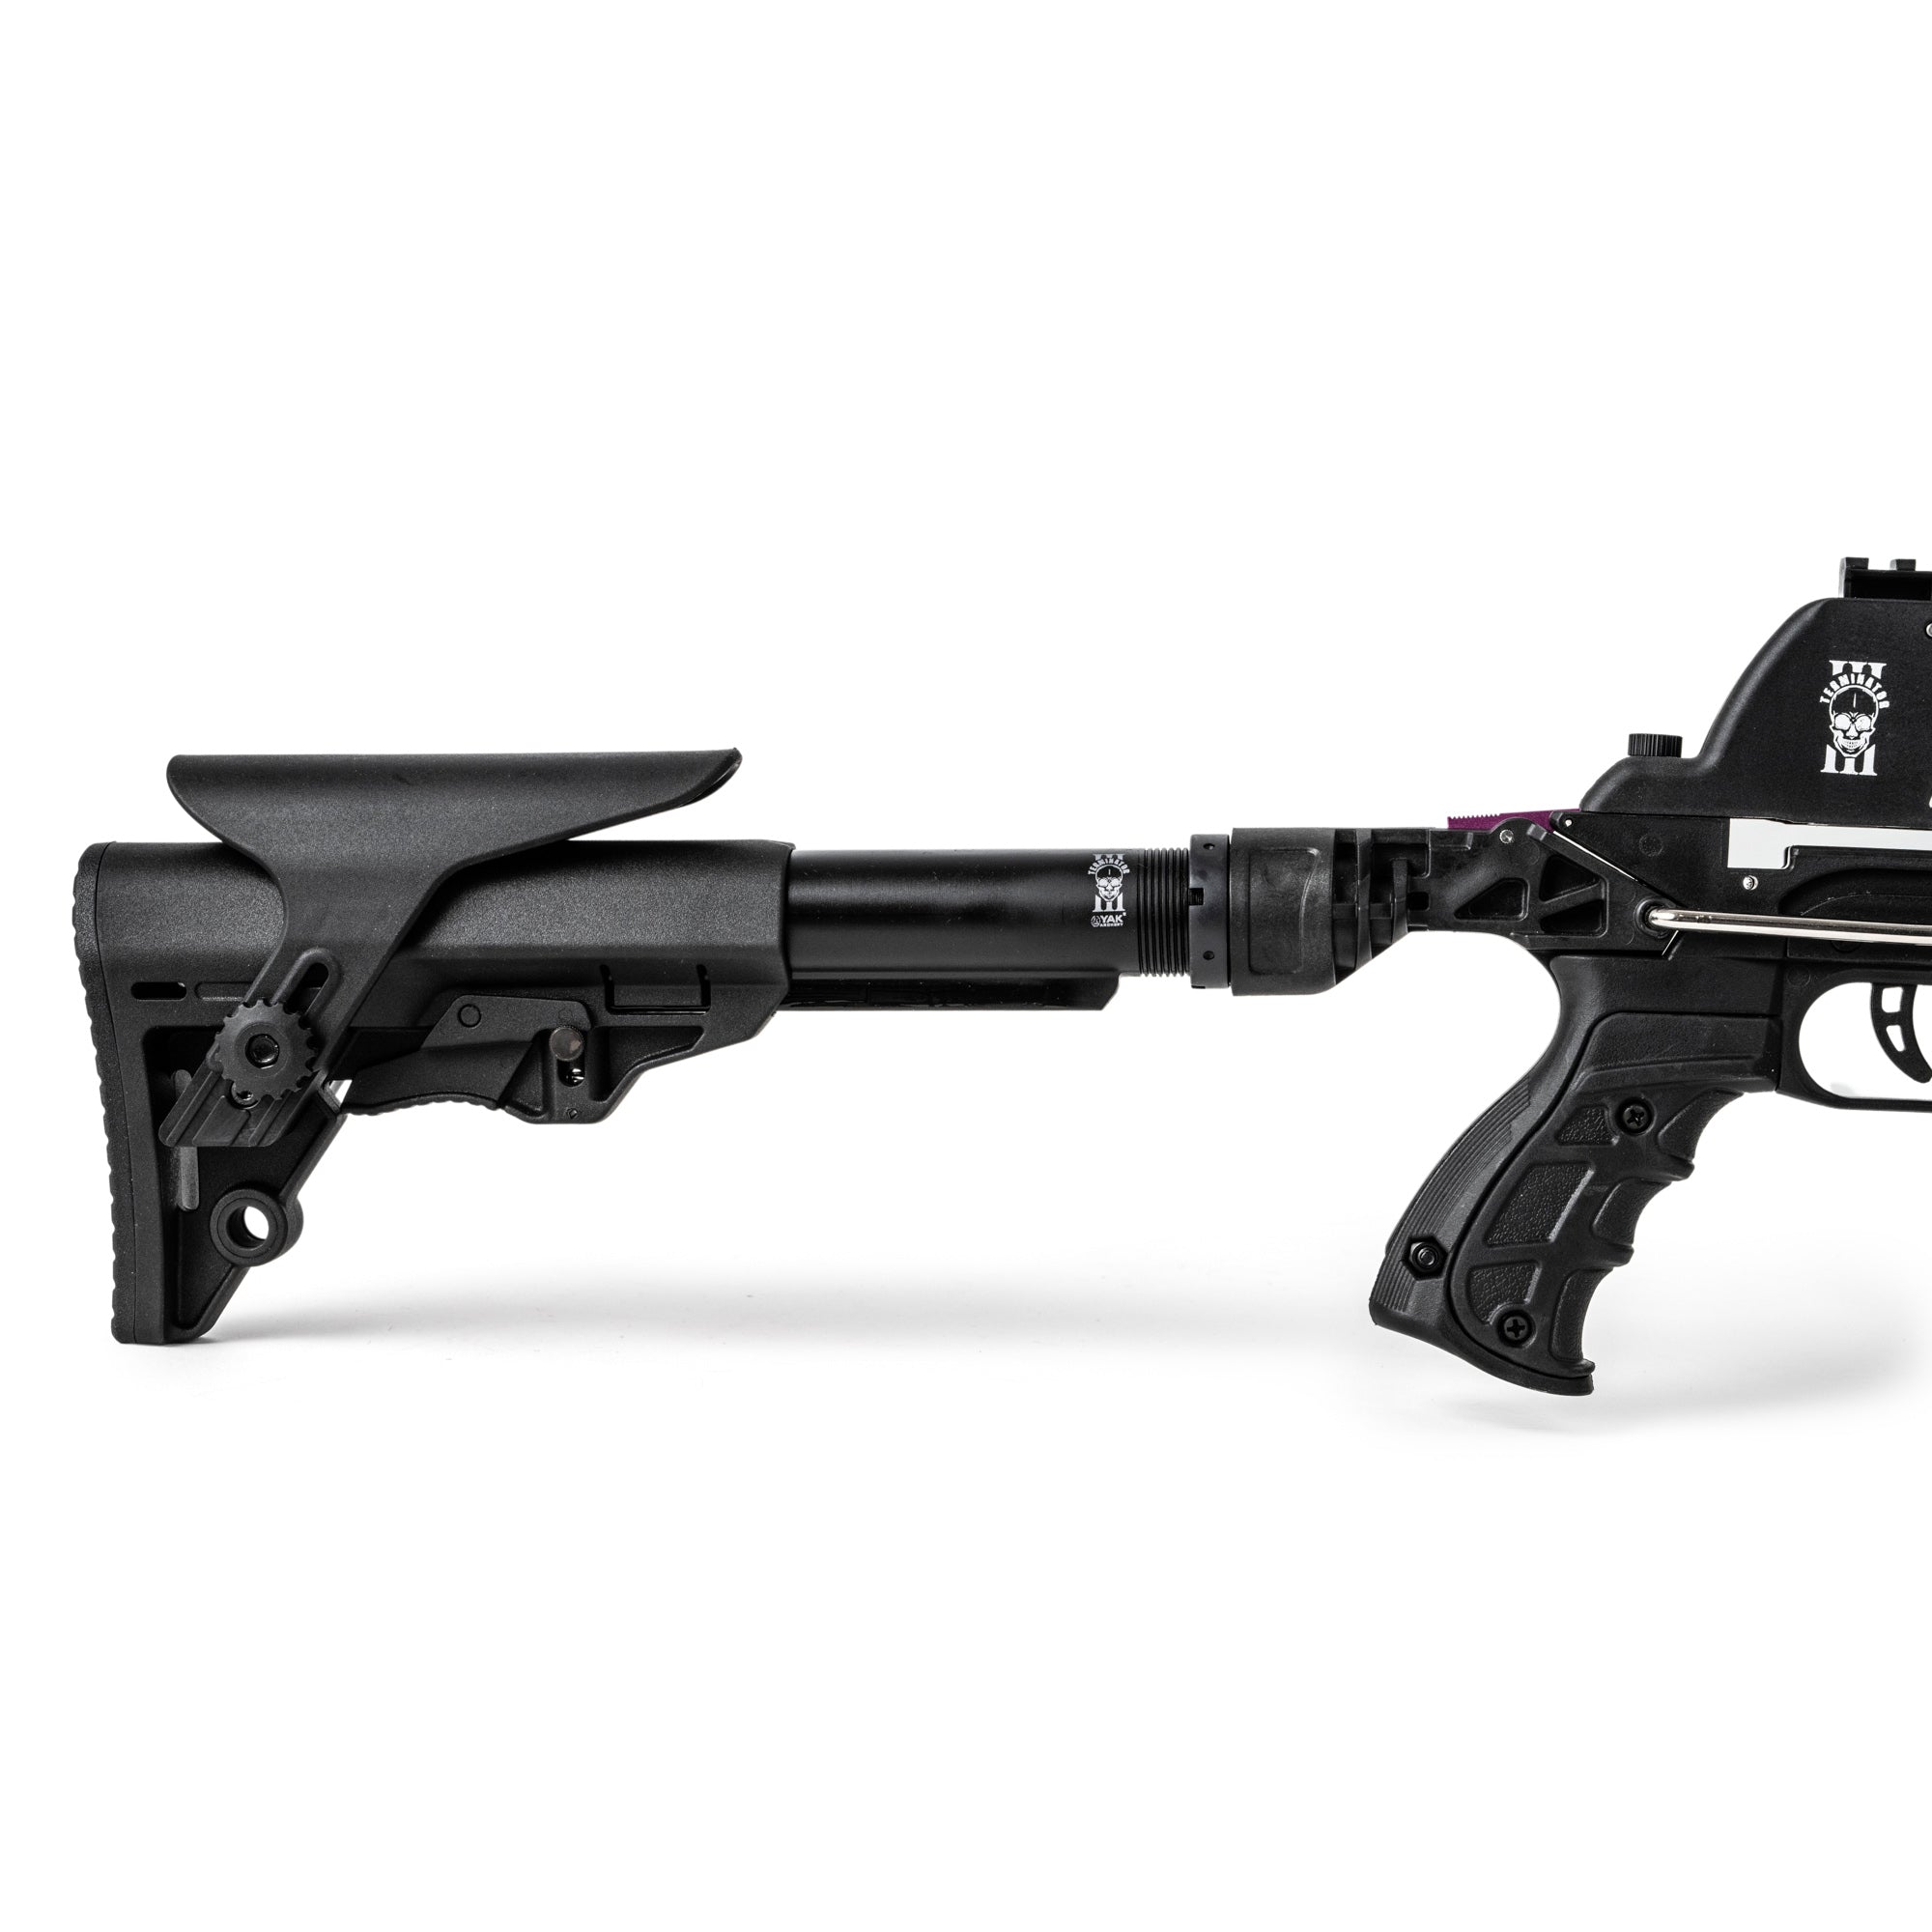 YAK Archery Terminator III Armbrust Ansicht Hinterschaft mit Kinnauflage